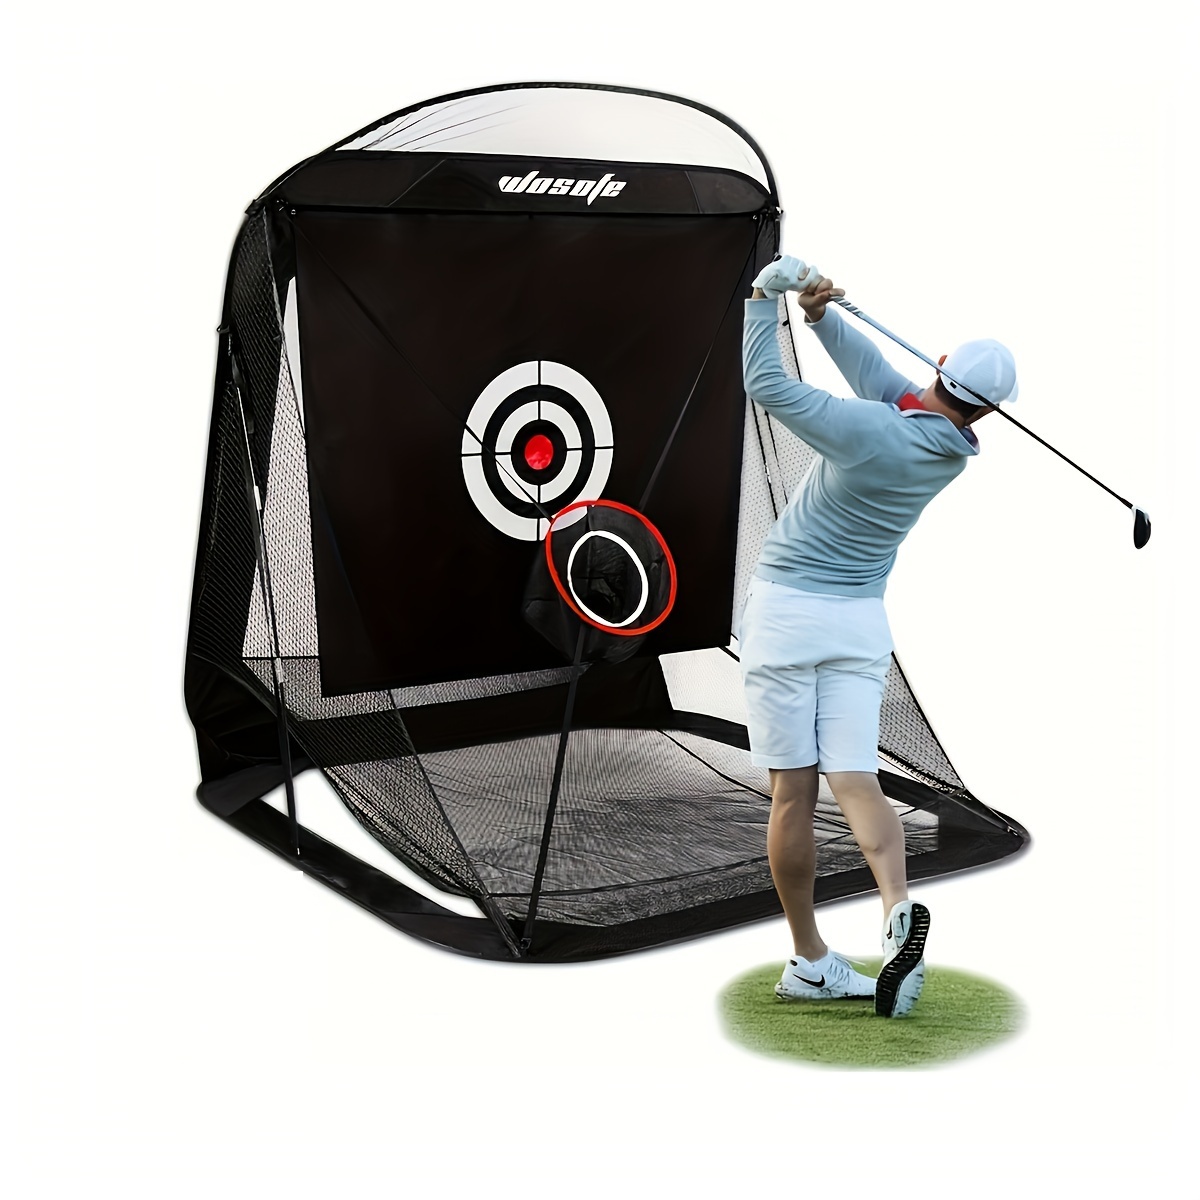 Golfnetz 7 x 6,6 ft Pop-Up Automatische Rückholsysteme Verstellbarer Gürtel  Zieltuch Zwei Barrierenseiten Faltbar Hinterhof Fahren Schlagen Chipping